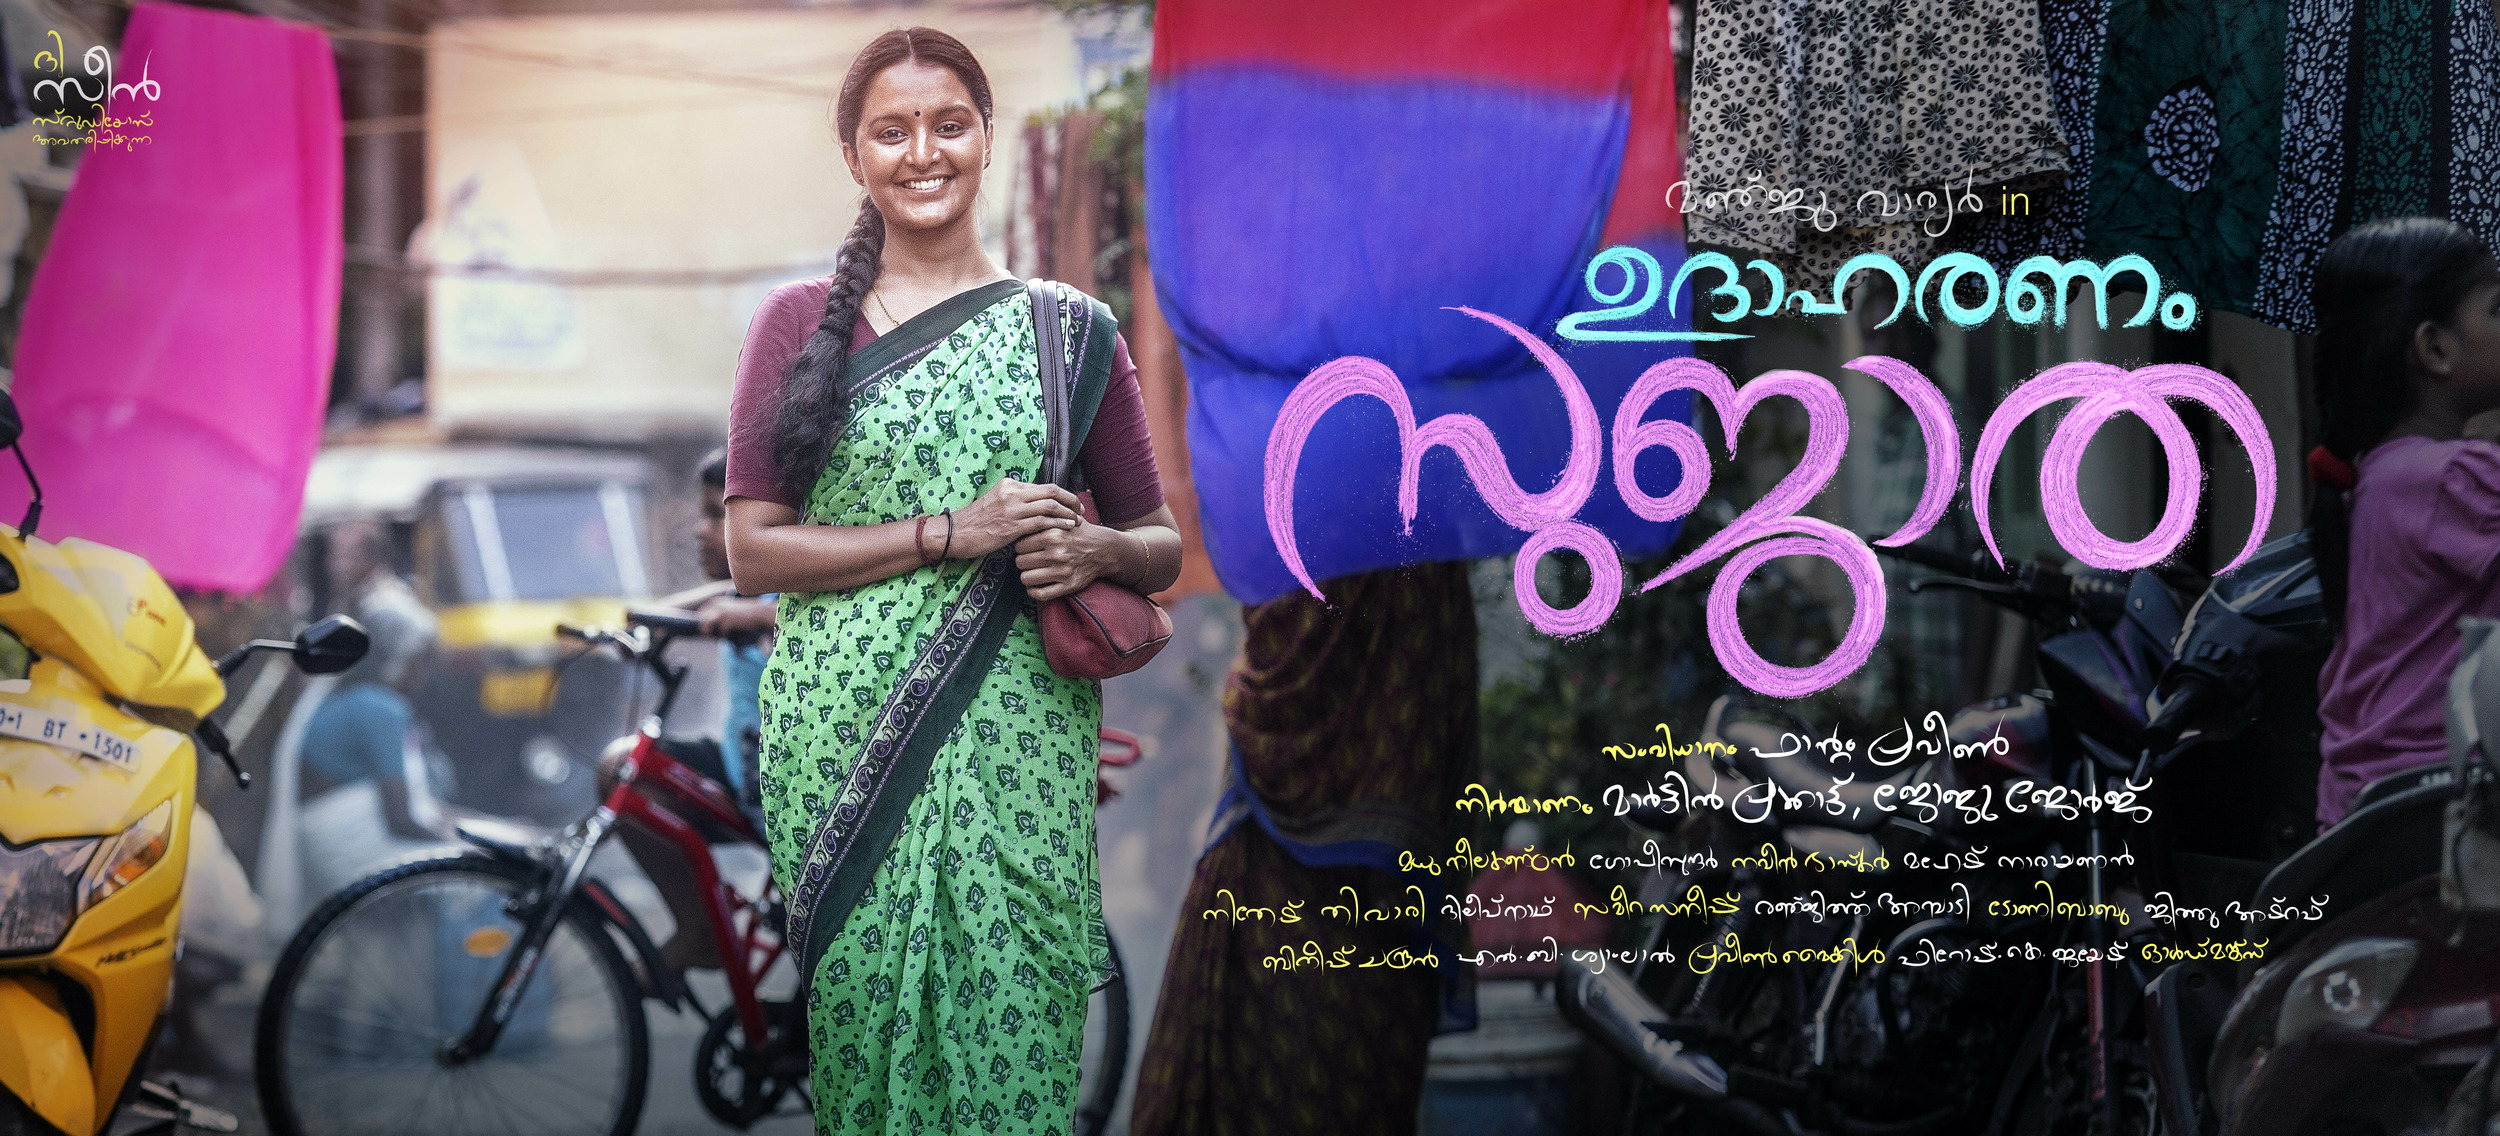 Mega Sized Movie Poster Image for Udhaharanam Sujatha (#3 of 5)